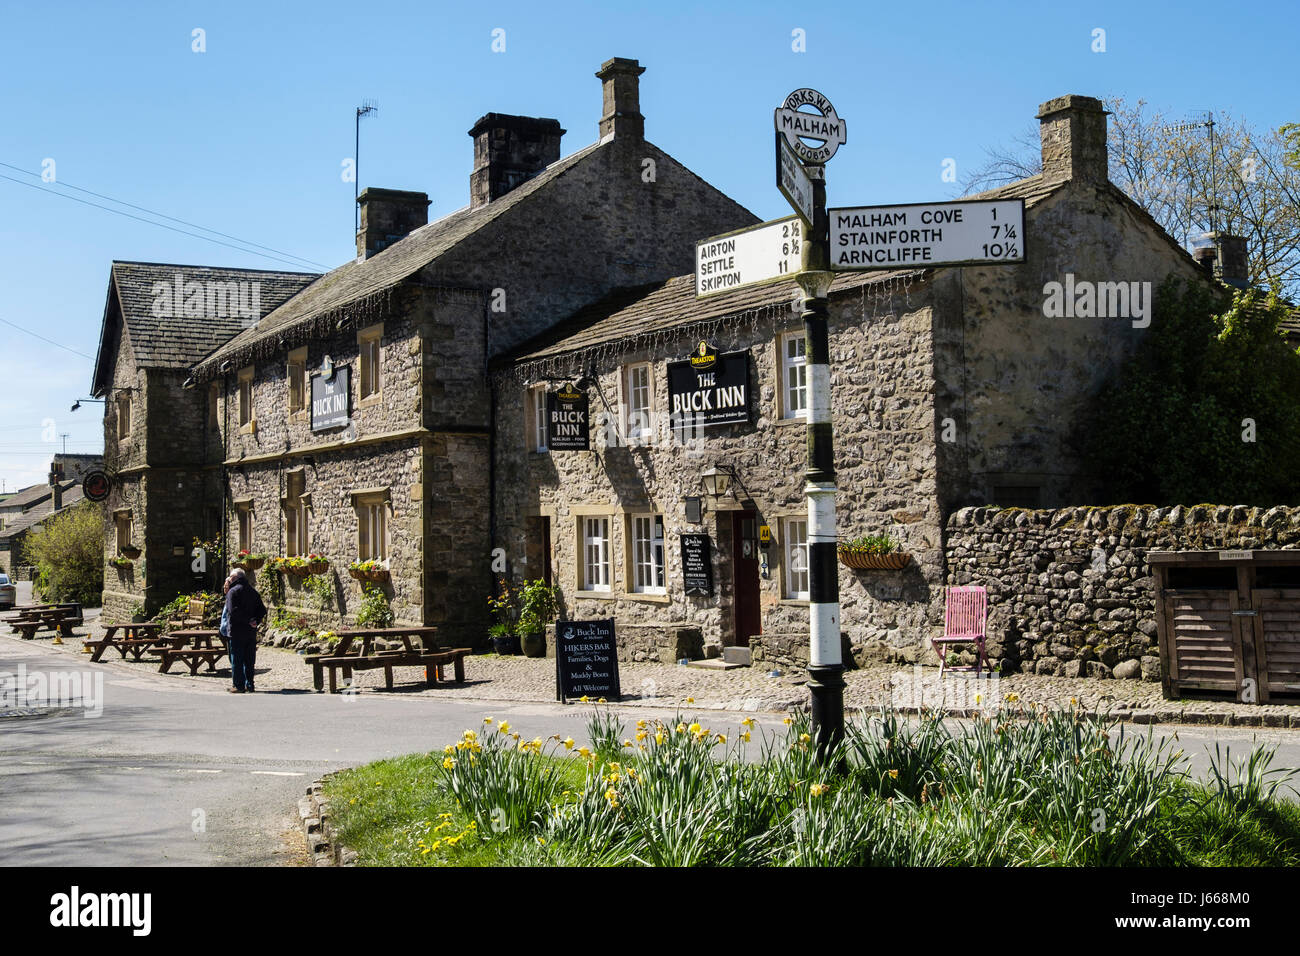 Il Buck Inn escursionisti bar nel villaggio e il pub Old Road sign in primavera. Malham, Malhamdale, Yorkshire Dales National Park, il Yorkshire, Inghilterra, Regno Unito, Gran Bretagna Foto Stock